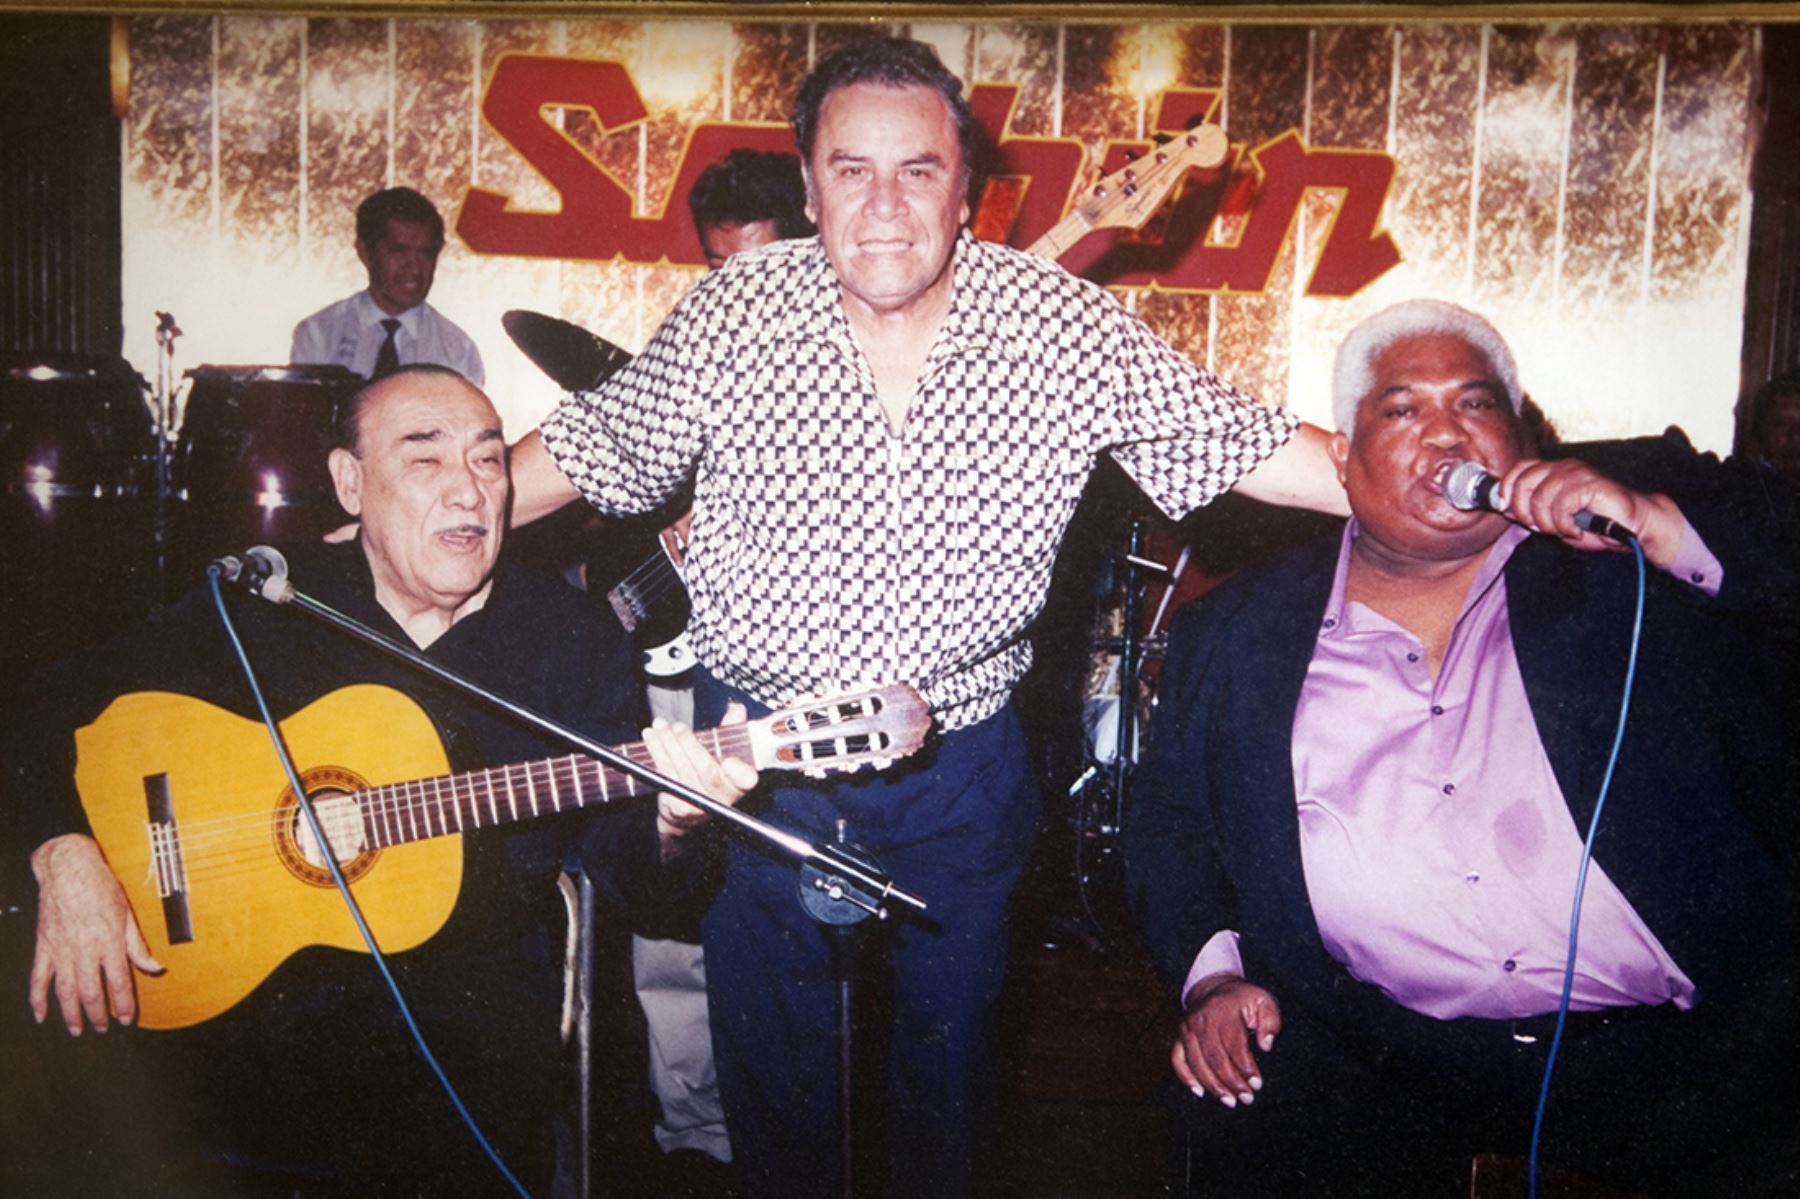 Lima - Decada 1990 / Óscar Avilés, Augusto Polo Campos y Arturo "Zambo" Cavero en lel restaurant turístico Sachún de Miraflores.